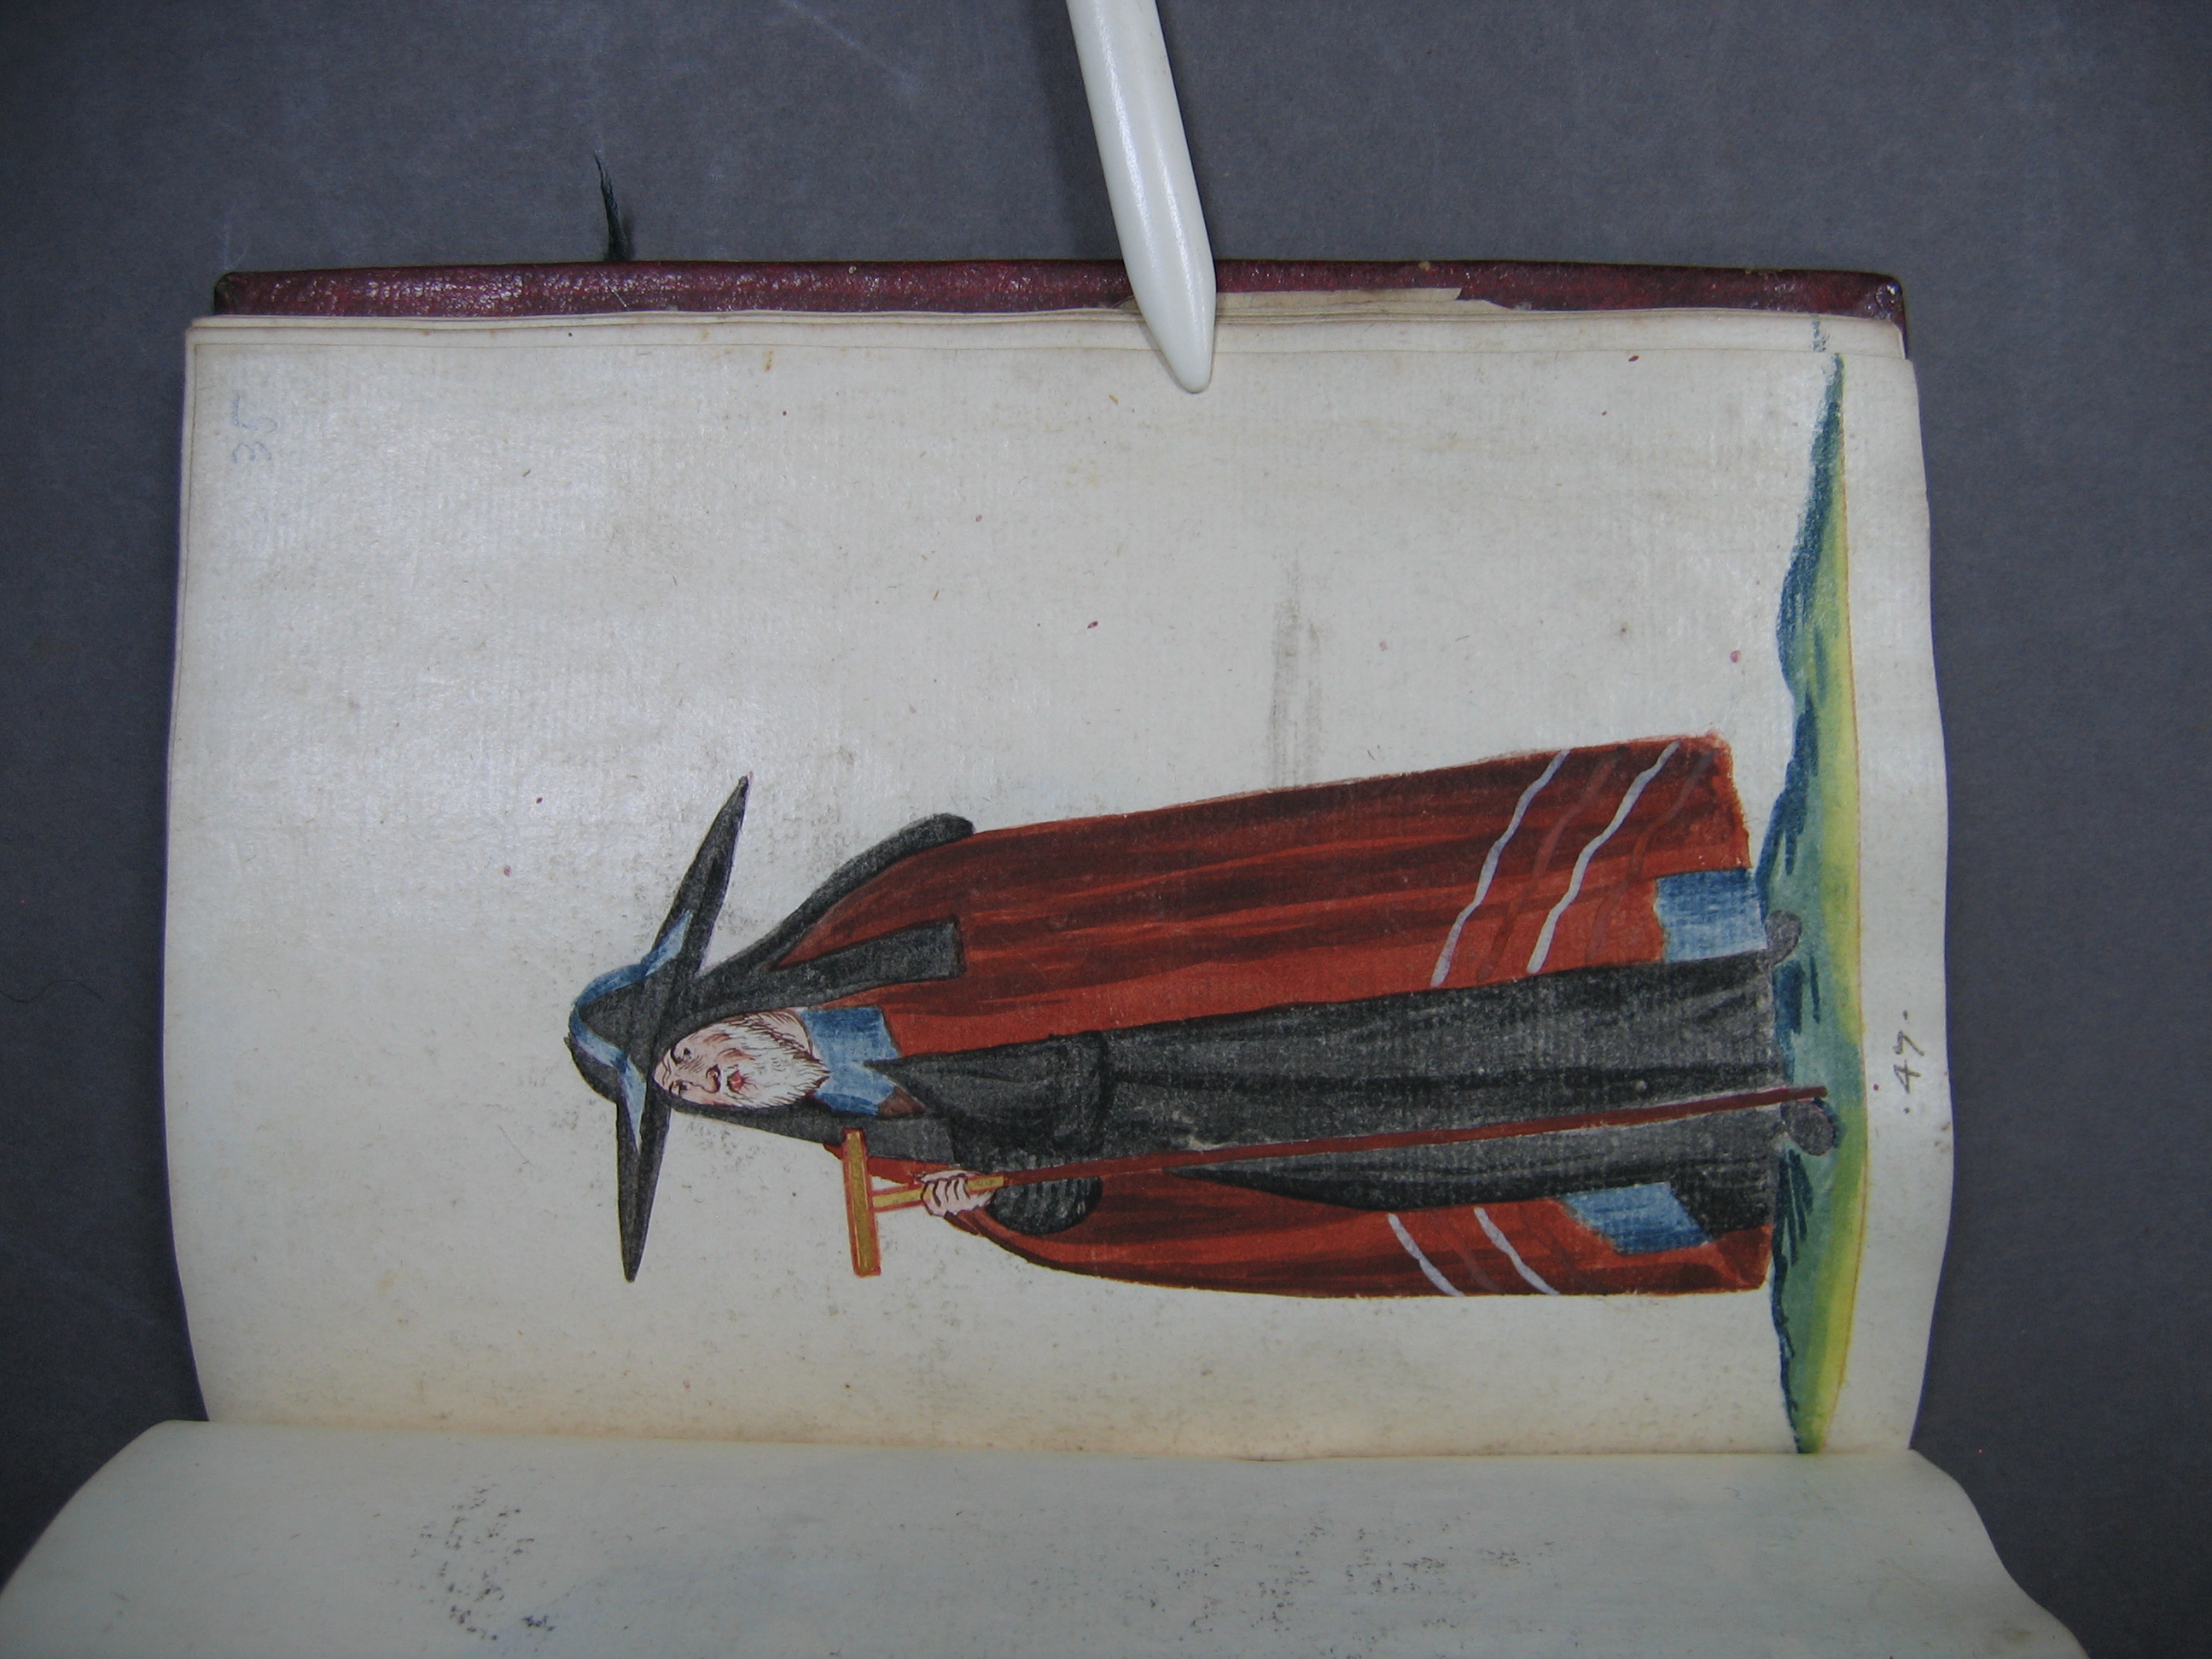 Folio 35